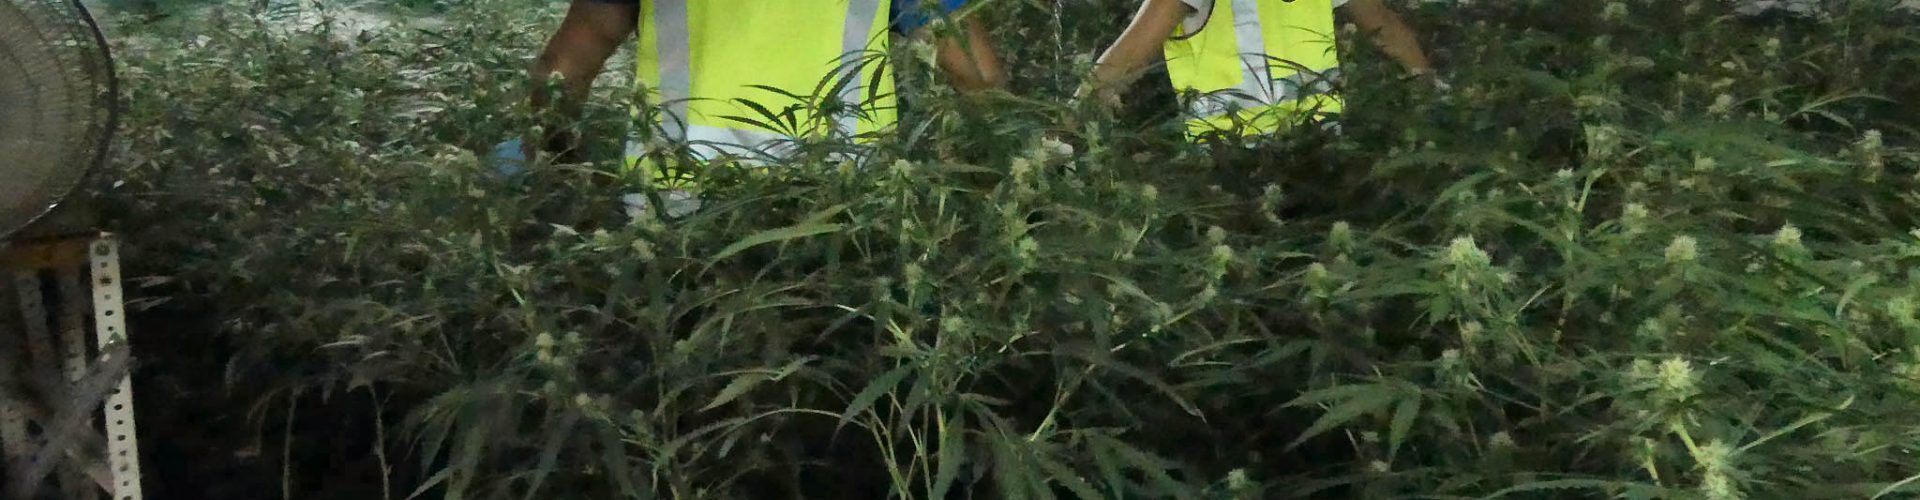 Desmanteladas cuatro plantaciones de marihuana soterradas para evitar su detección